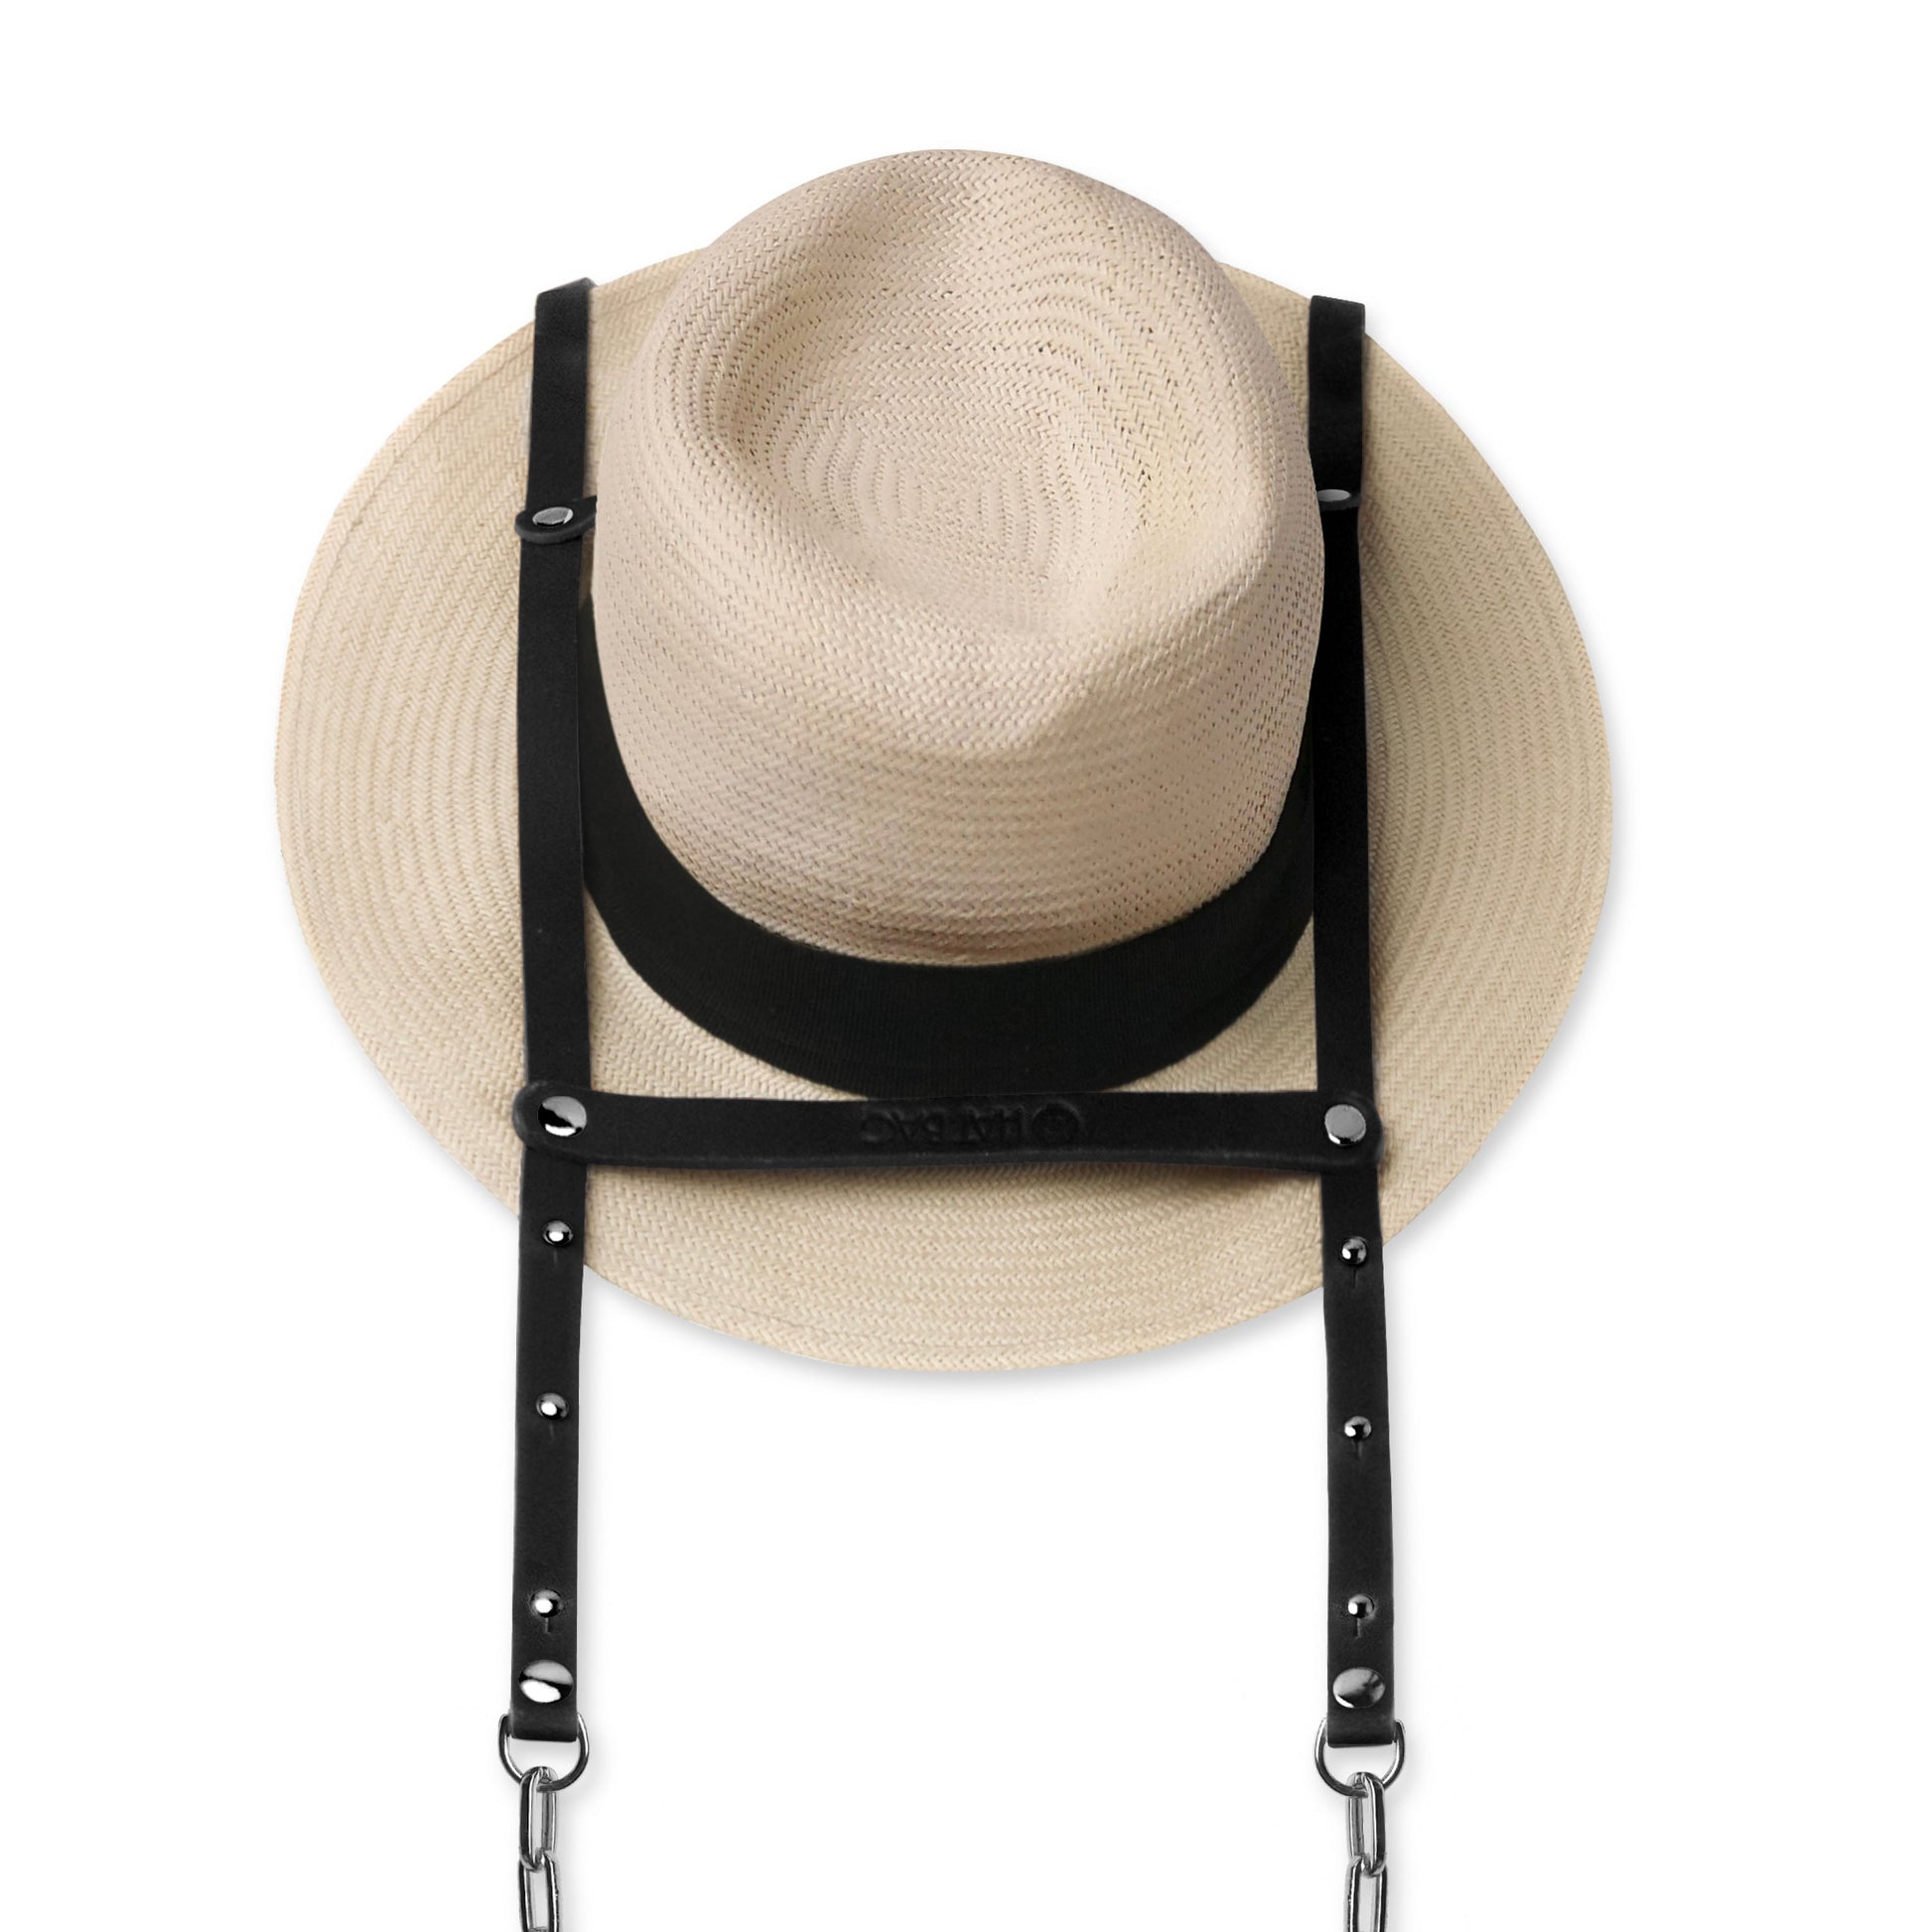 Porte Chapeau Hat Bag "Paris" en cuir noir et chainettes argent - hat bag paris